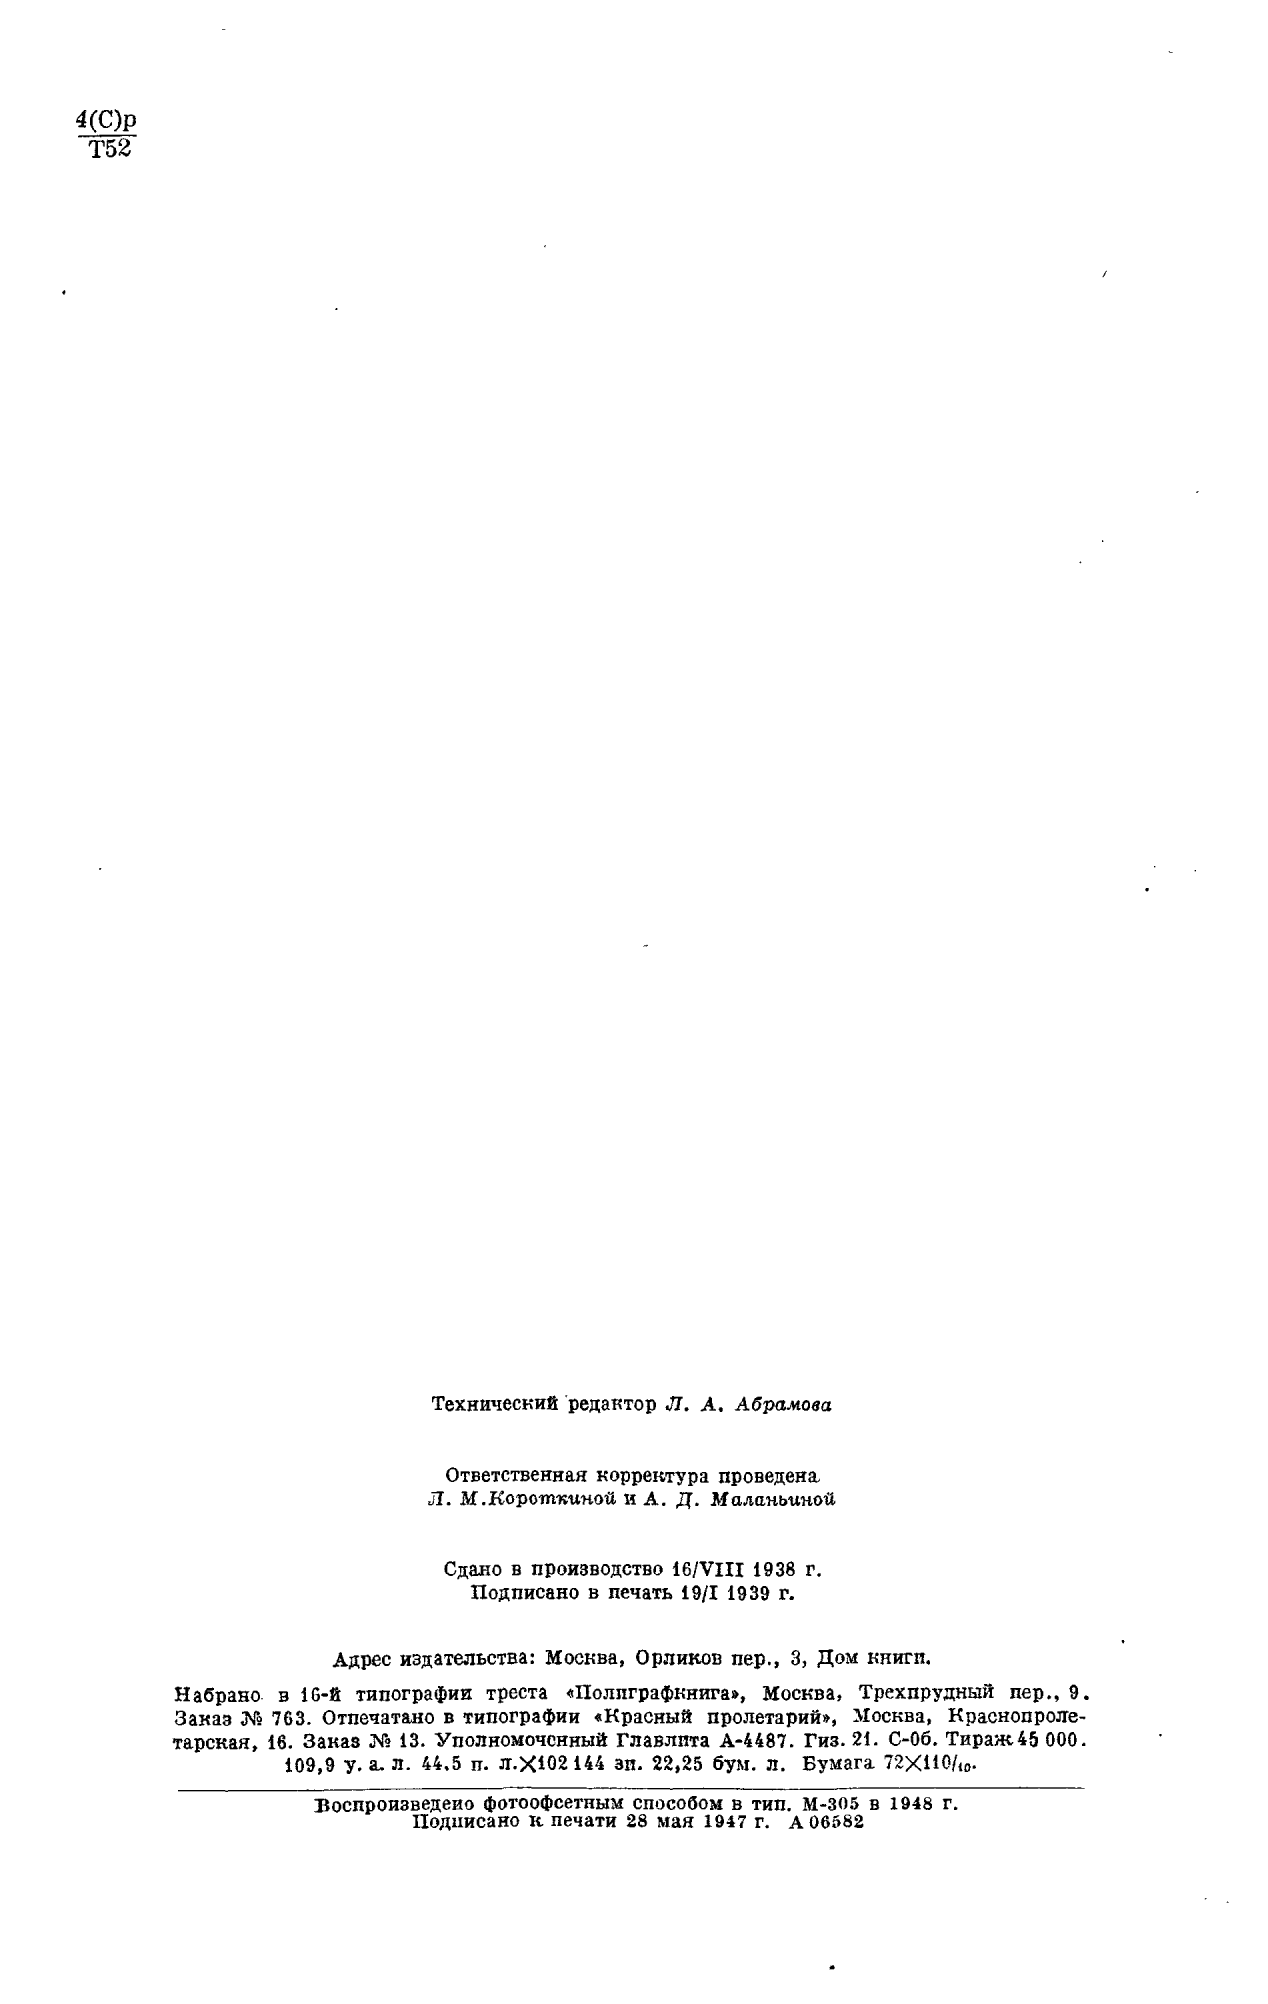 Фотокопия pdf / скан страницы 2 толкового словаря Ушакова (том 3)